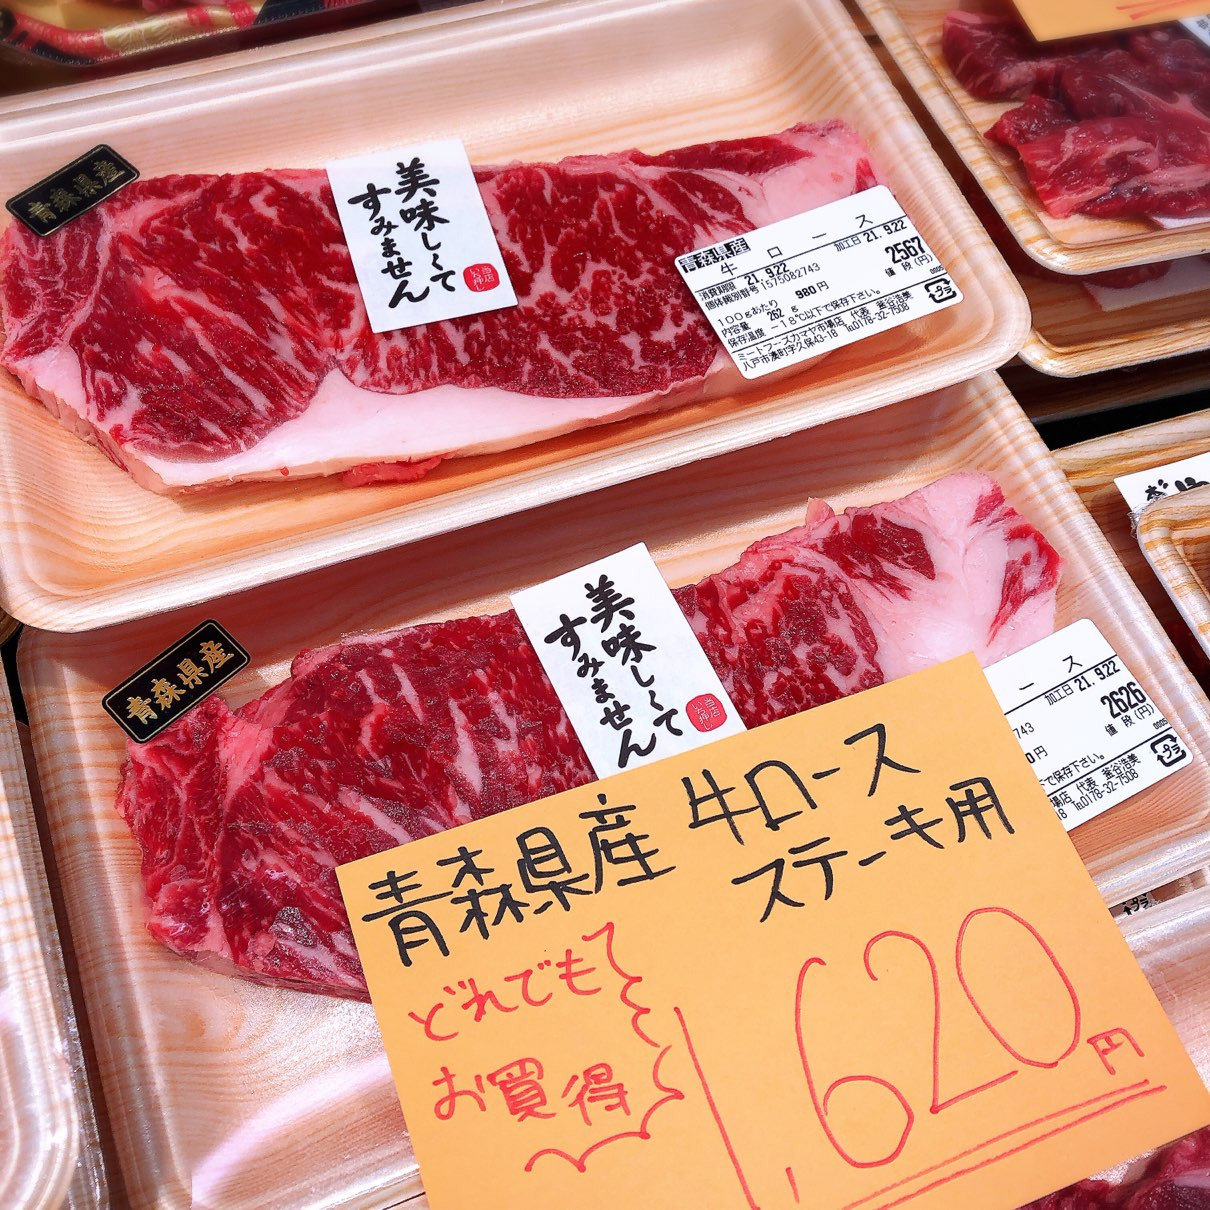 本日は青森県産牛ロースステーキ用がお買得です。